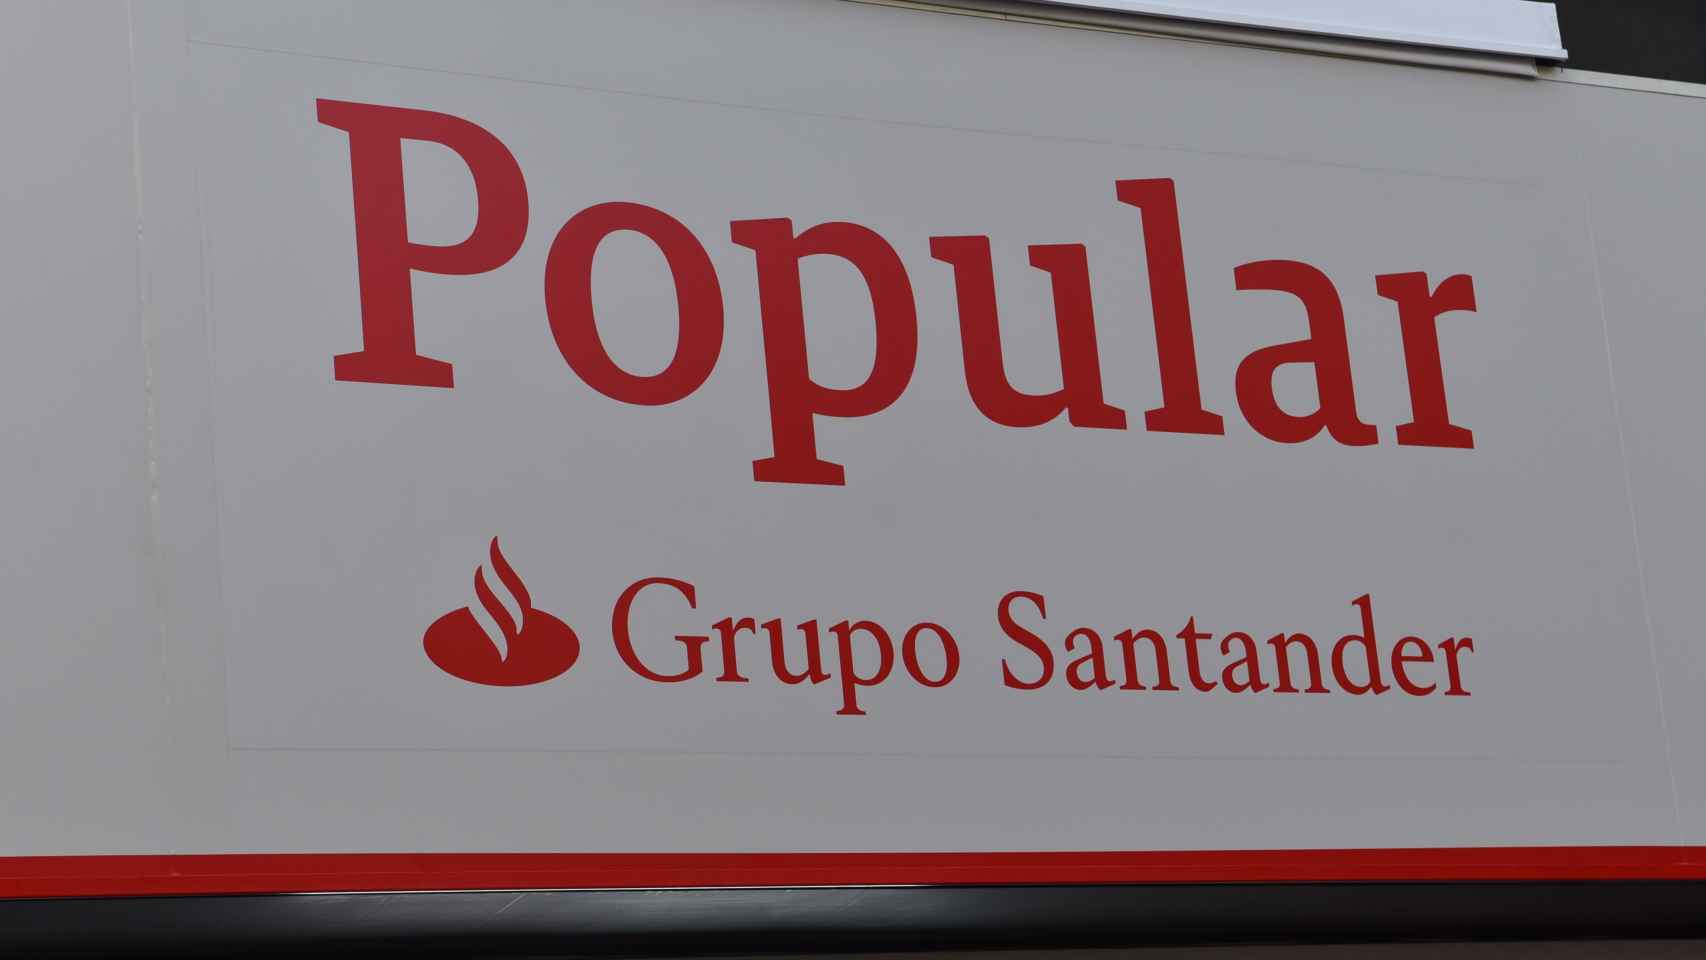 Imagen de una sucursal de Banco Popular tras su integración en el Grupo Santander.